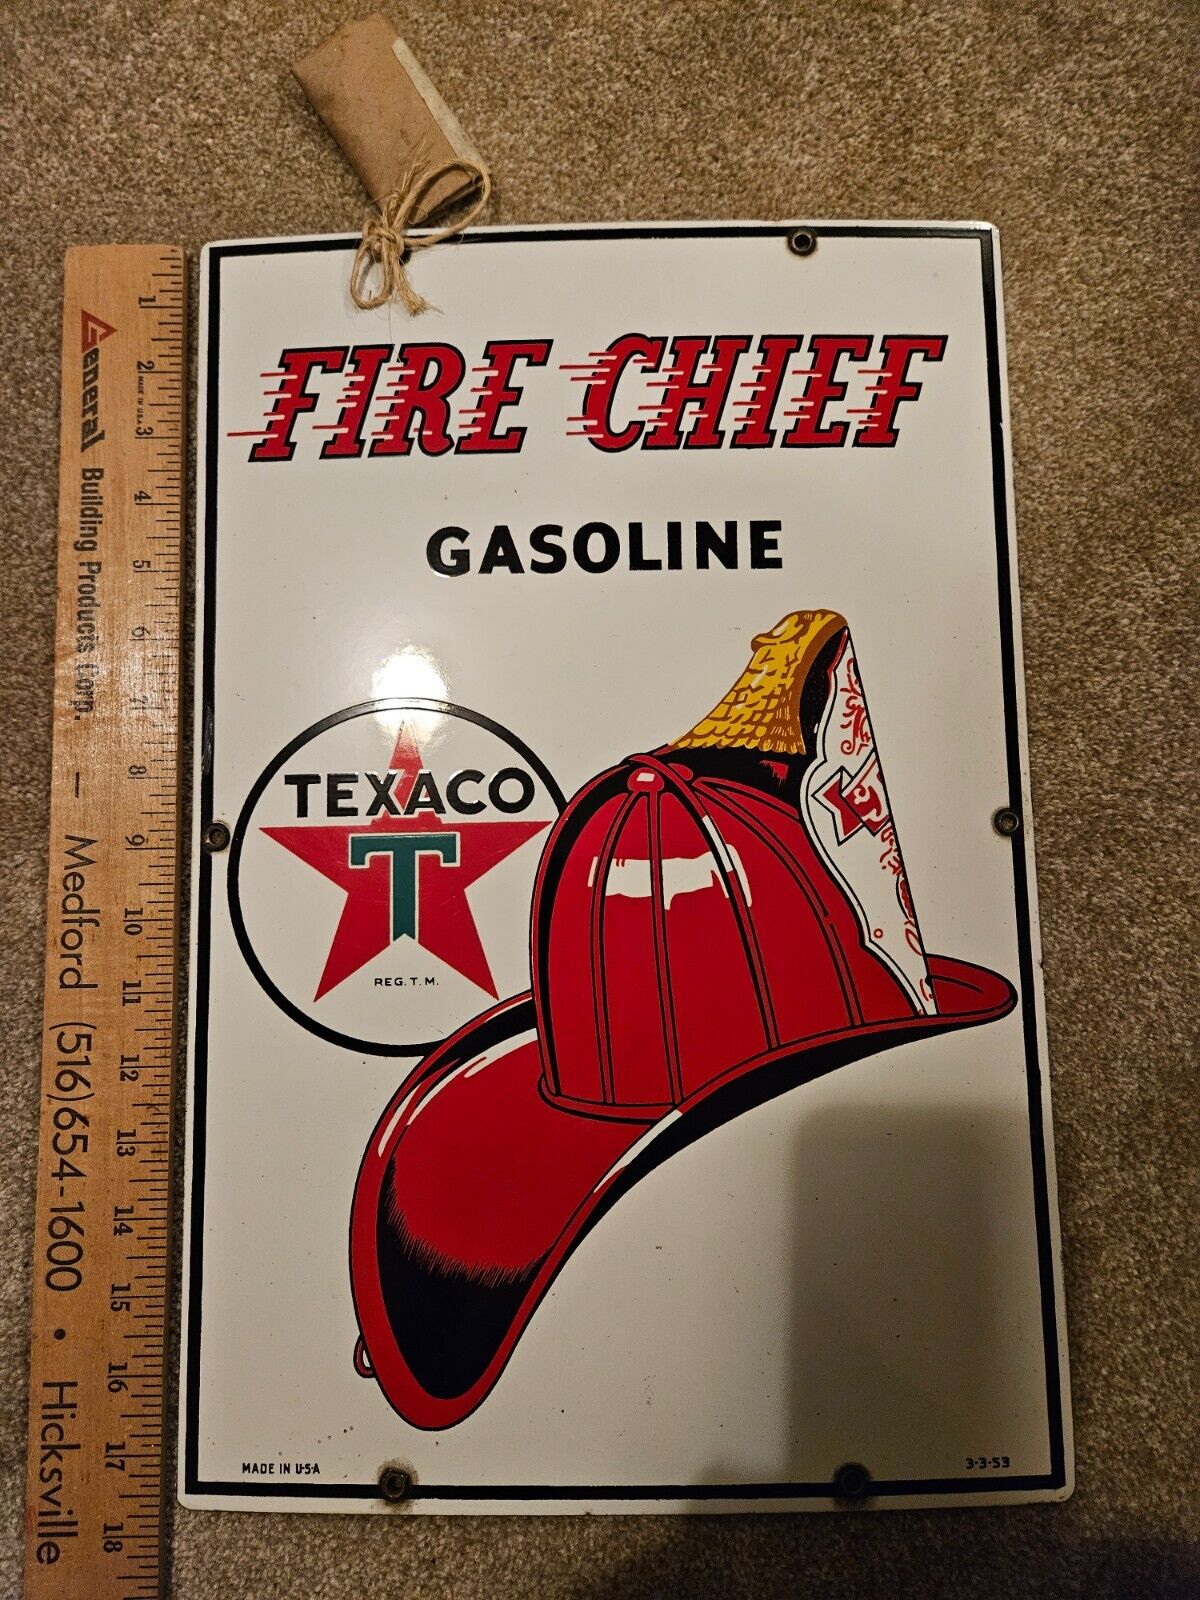 Original 1953 Texaco Fire Chief Porcelain GASOLINE Pump Plate Sign Gas Oil